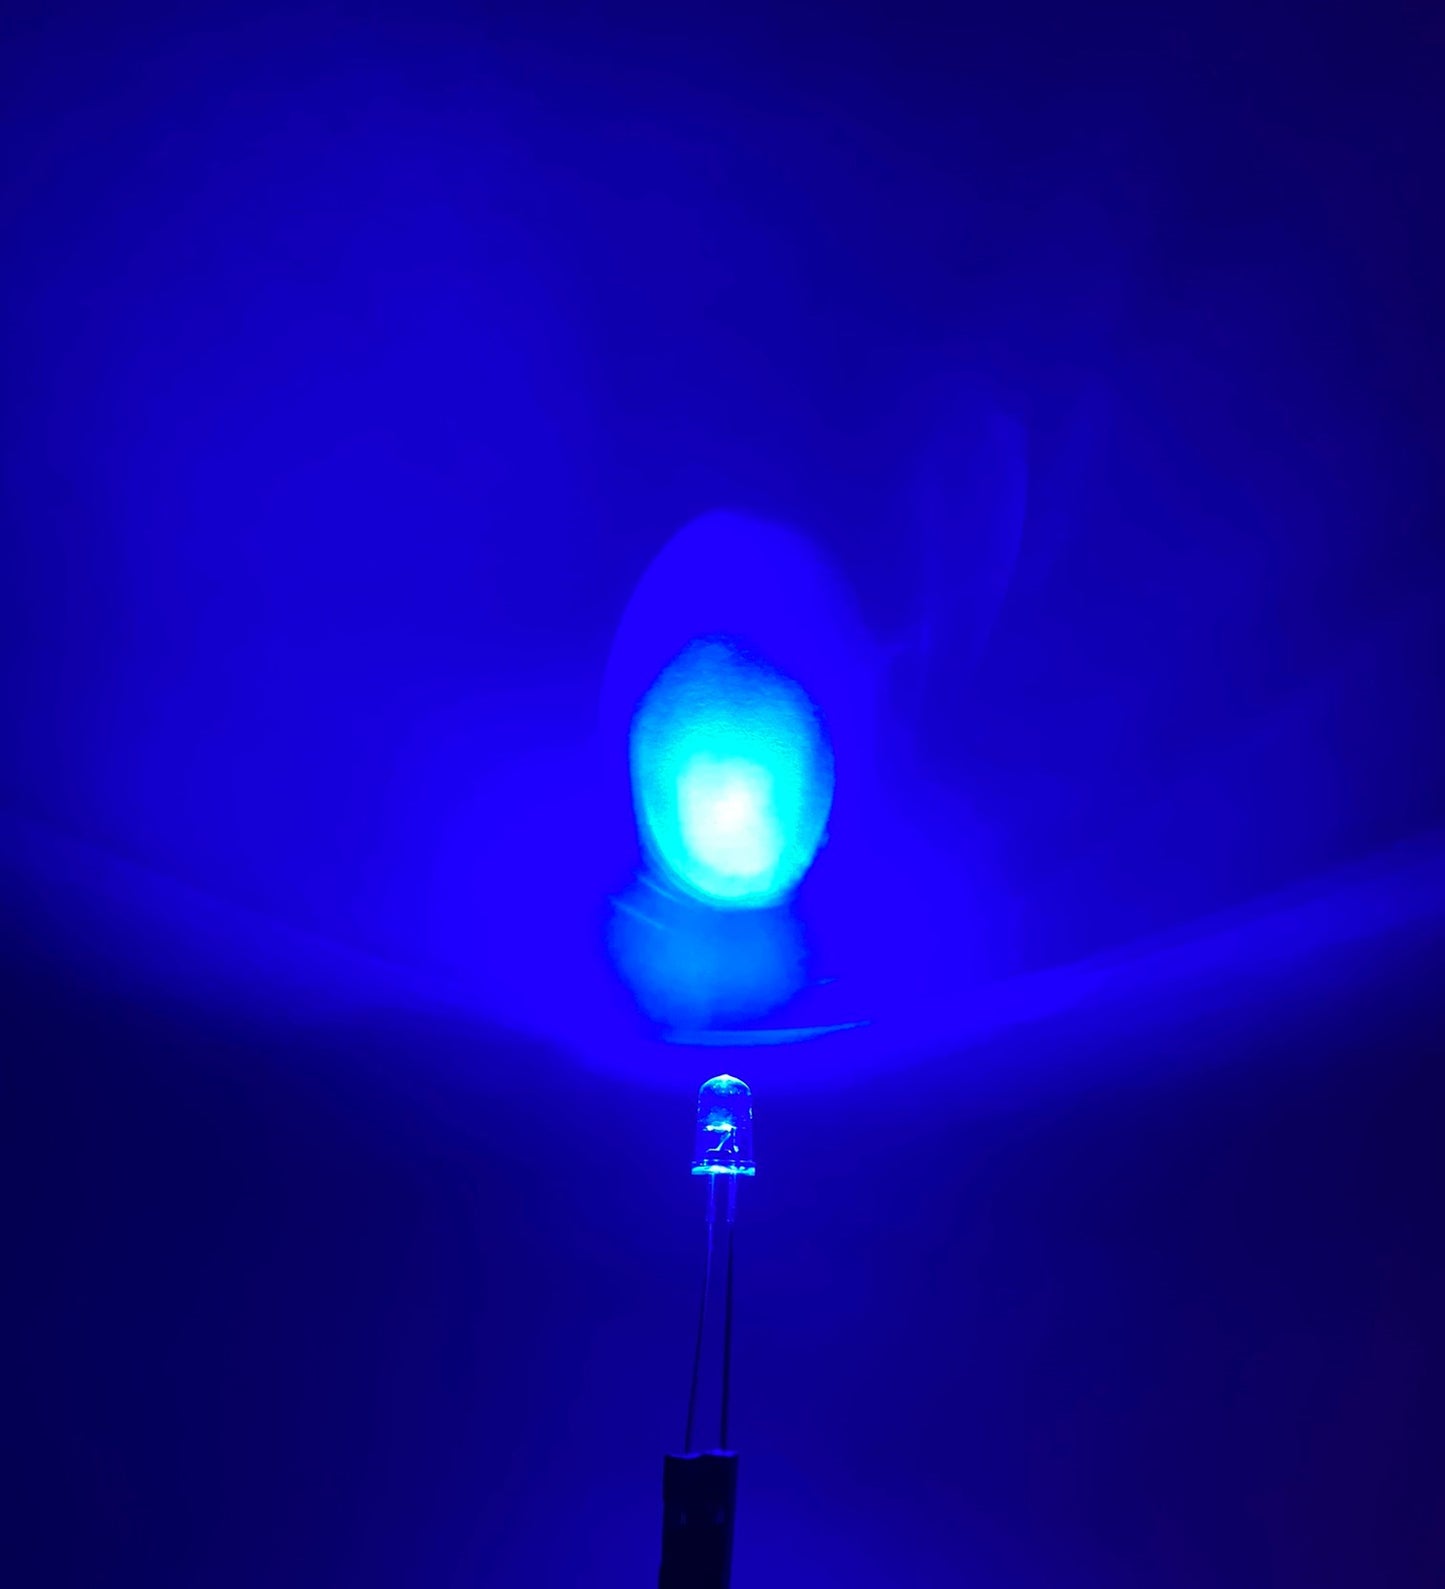 Diodo LED 5mm Camaleón RGB | Cambio de color automático | Destello lento | Destello rápido